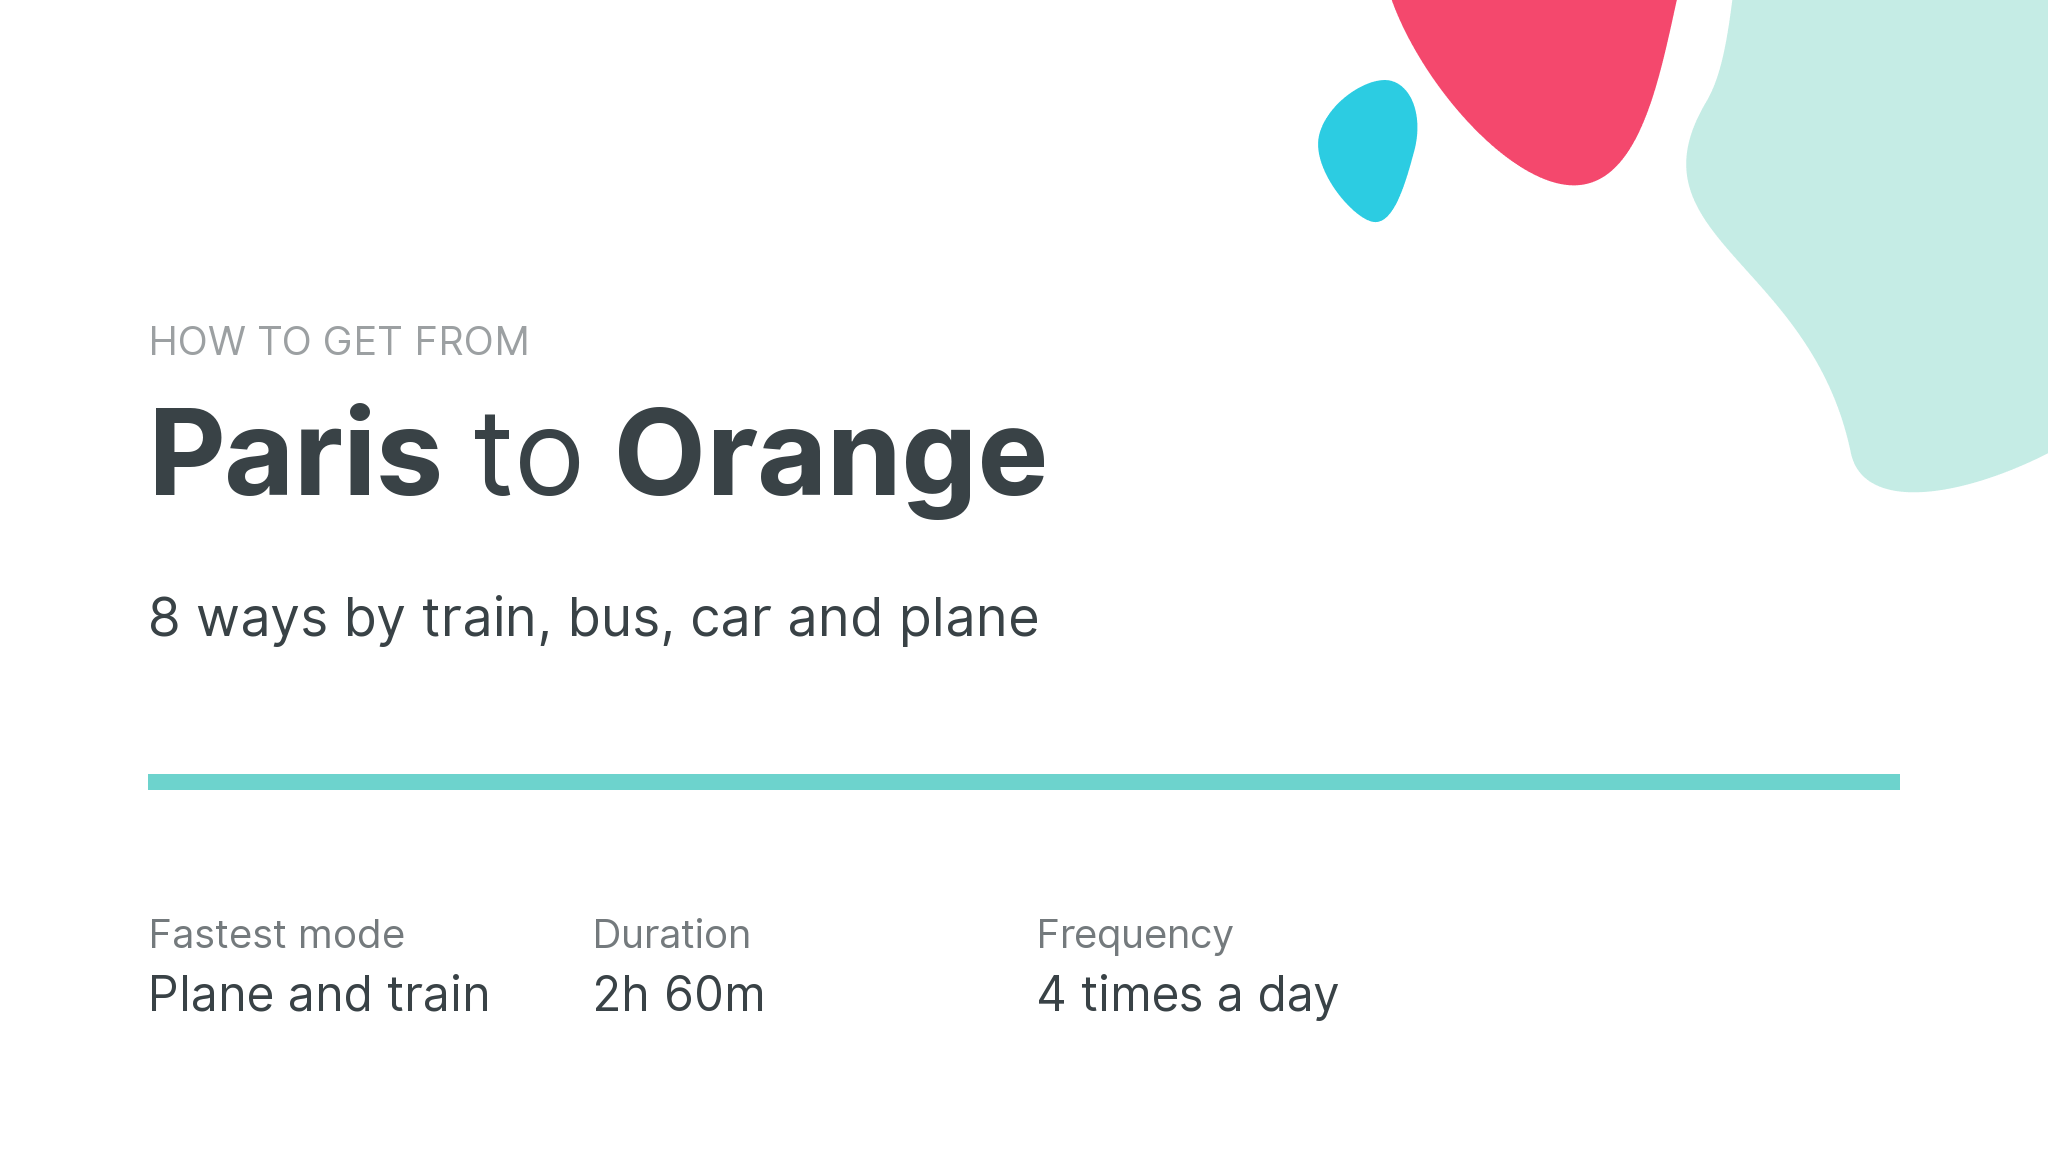 How do I get from Paris to Orange